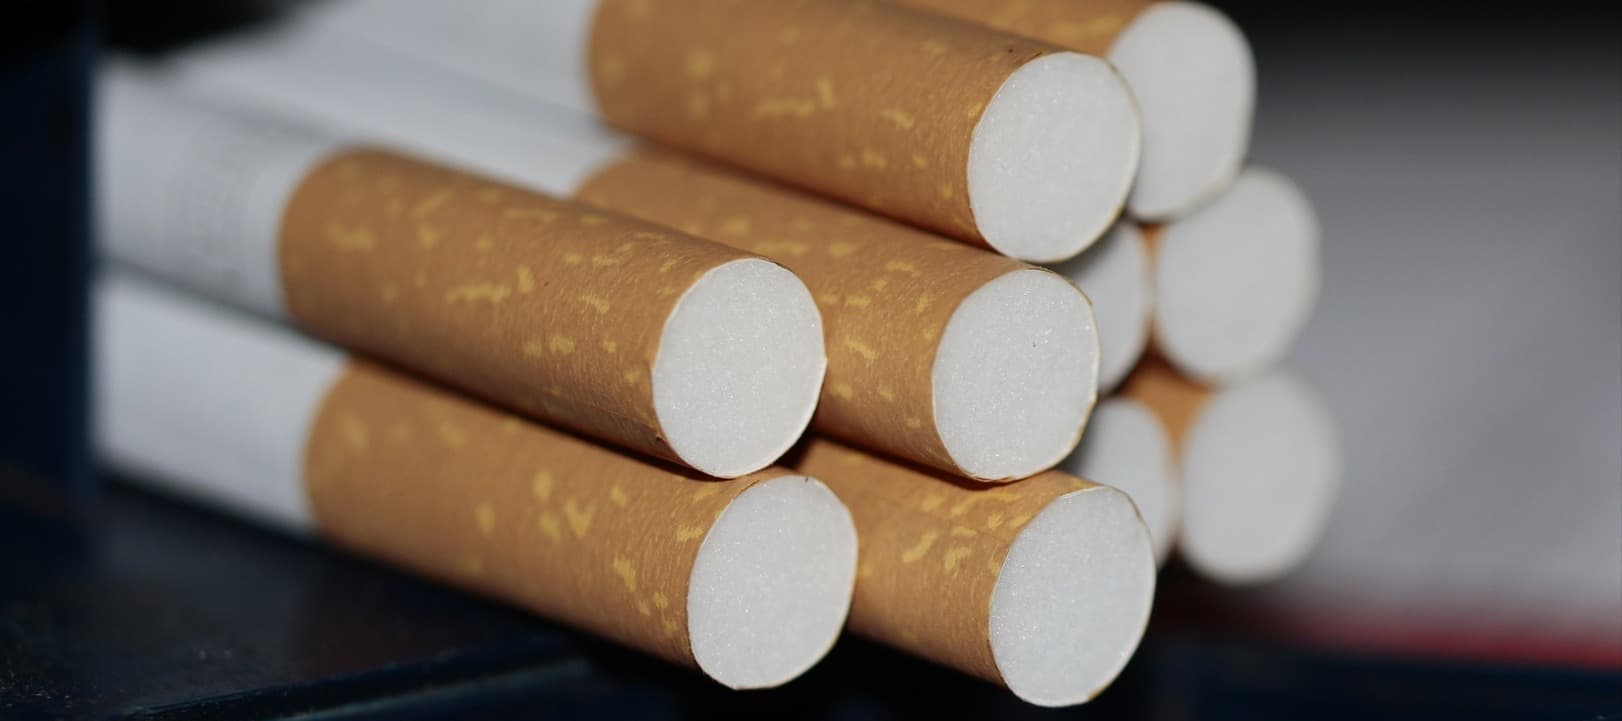 Фото новости: "Российское подразделение British American Tobacco перешло компании из ОАЭ"